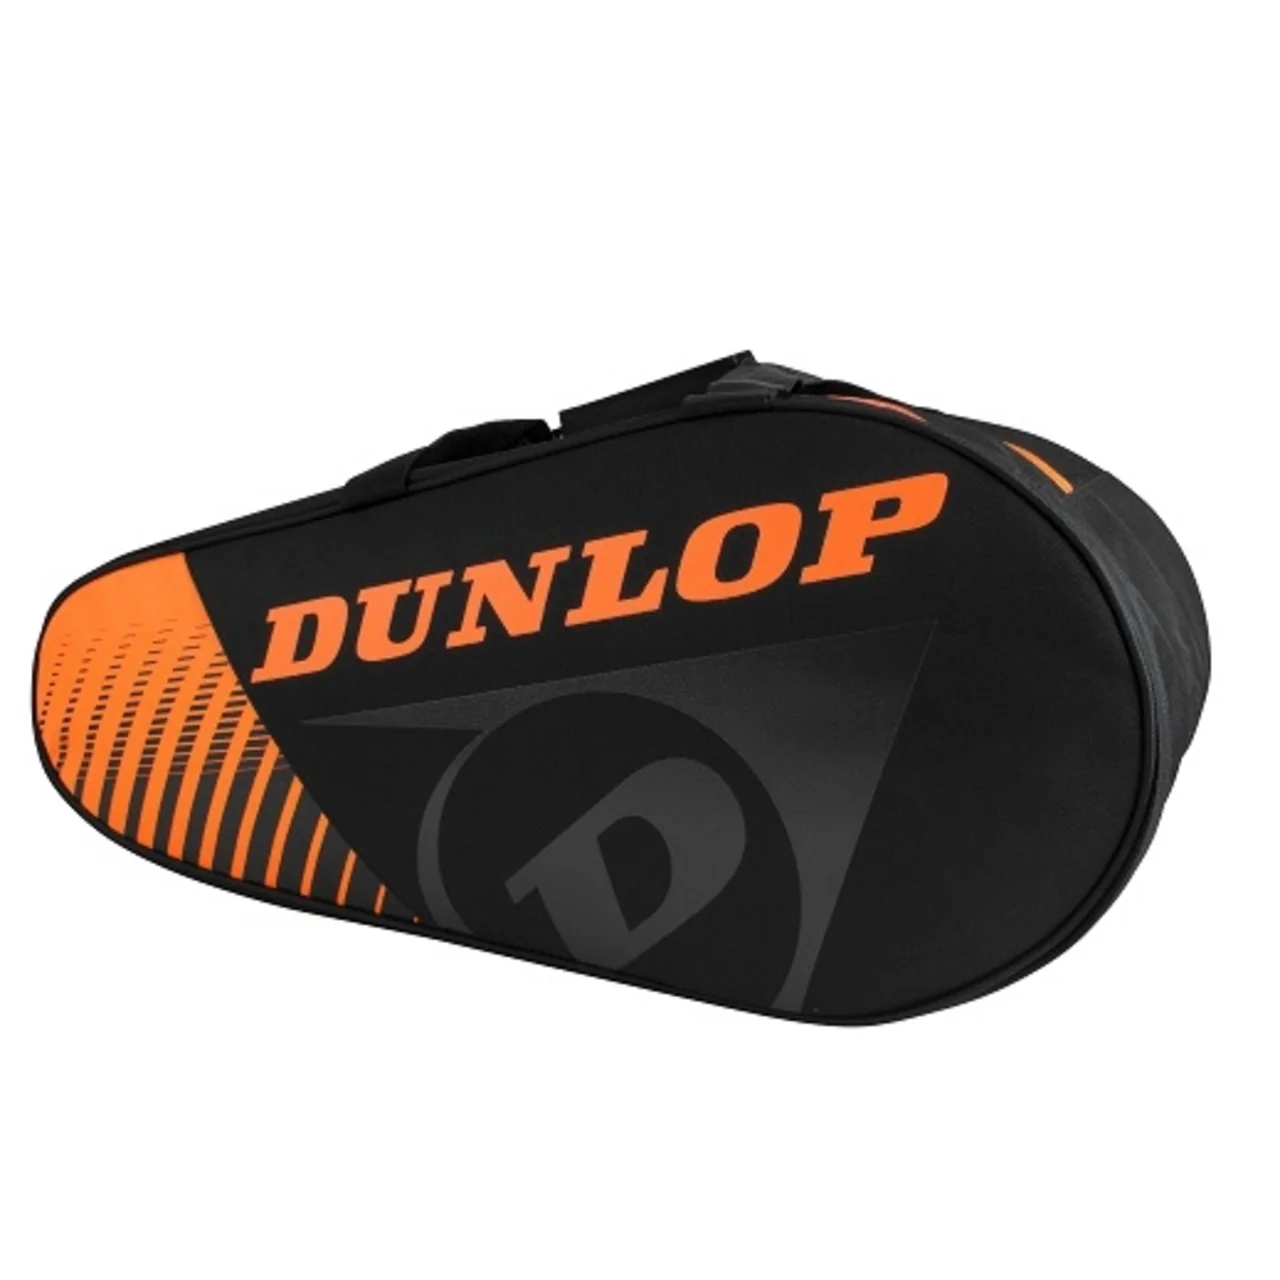 Dunlop Paletro Play Black/Orange 2021